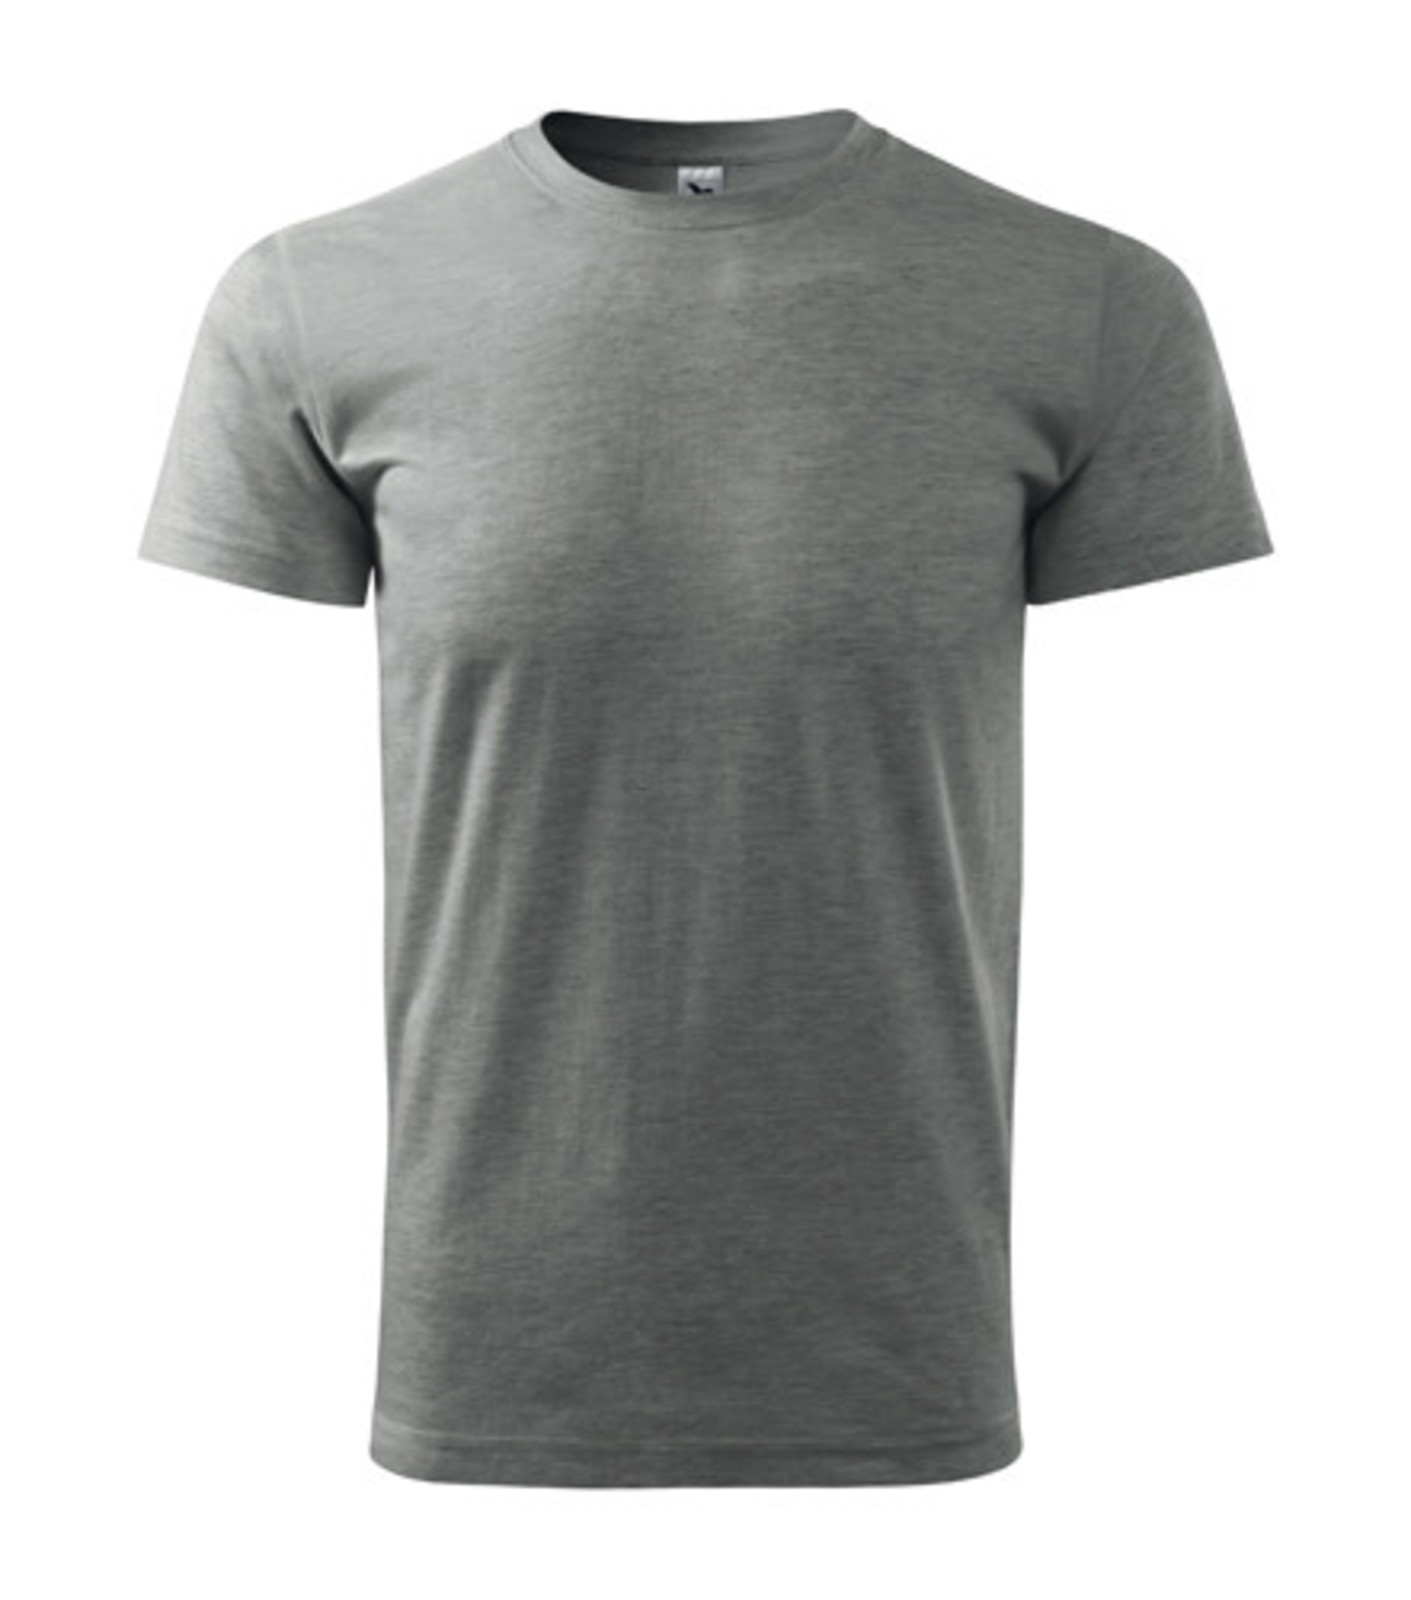 Unisex tričko Malfini Heavy New 137 - veľkosť: M, farba: tmavosivý melír